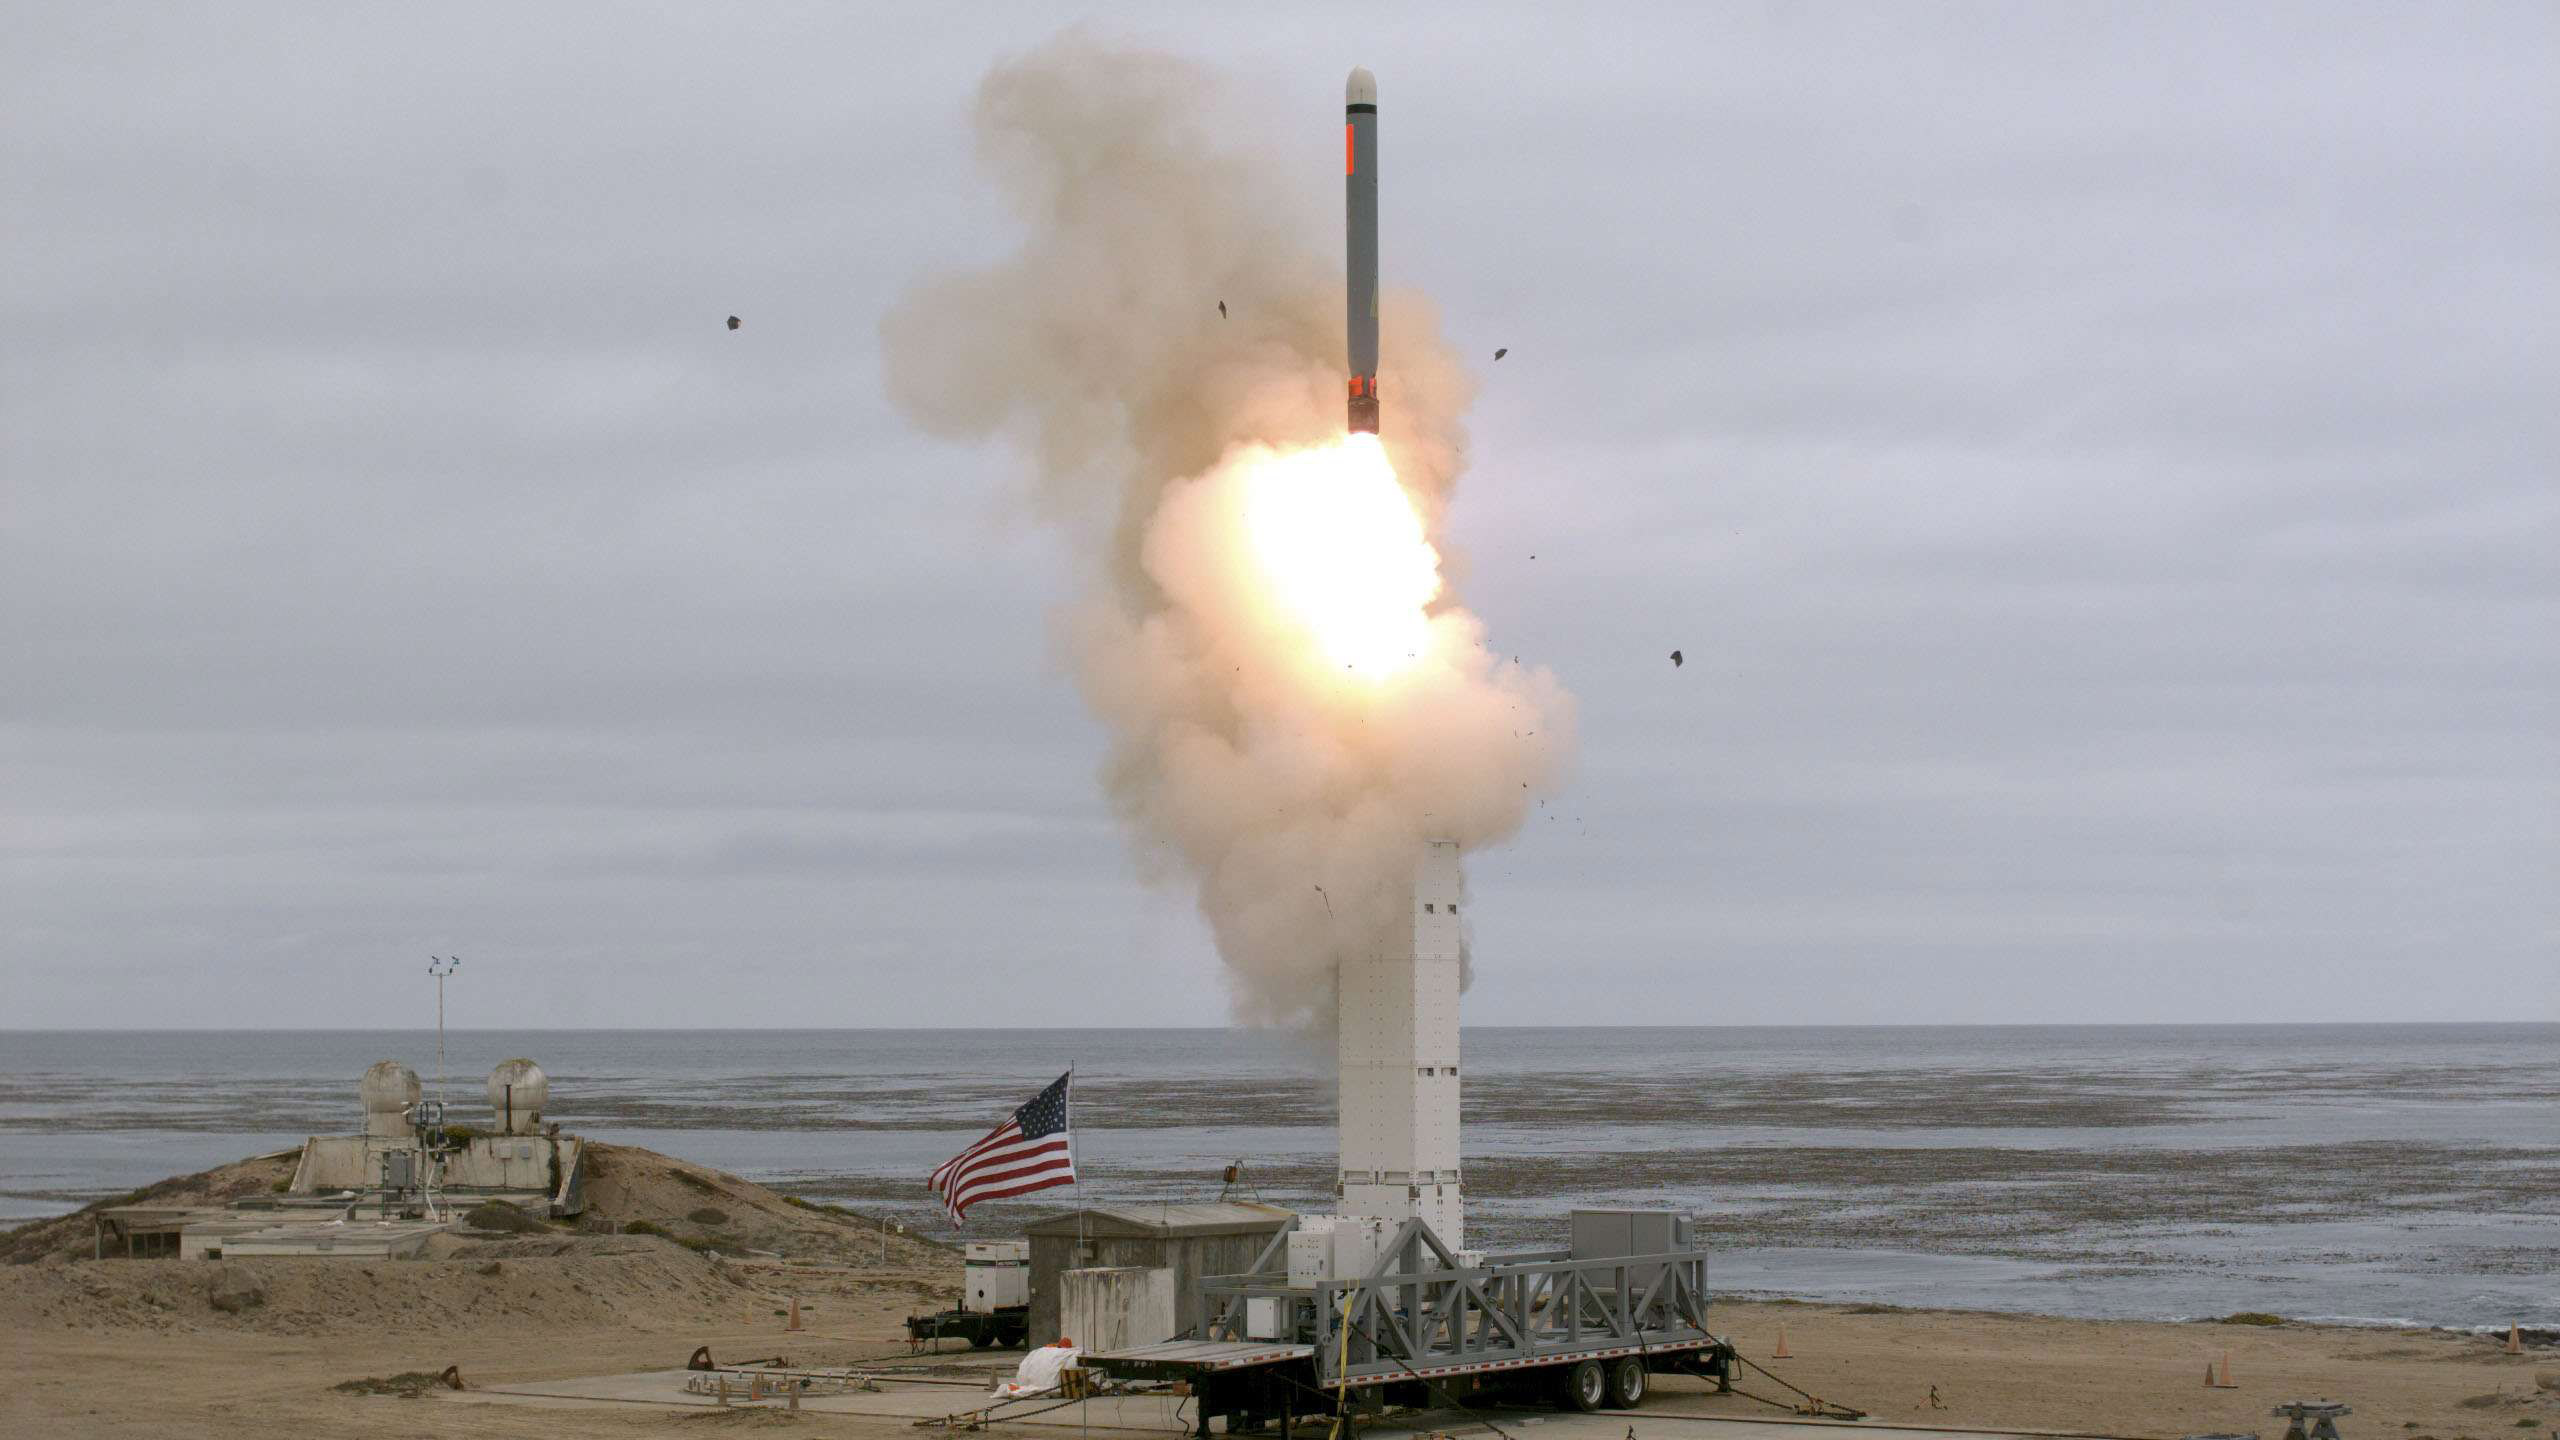 إطلاق الصاروخ تم بنظام إطلاق عمودي من نوع "مارك 41"